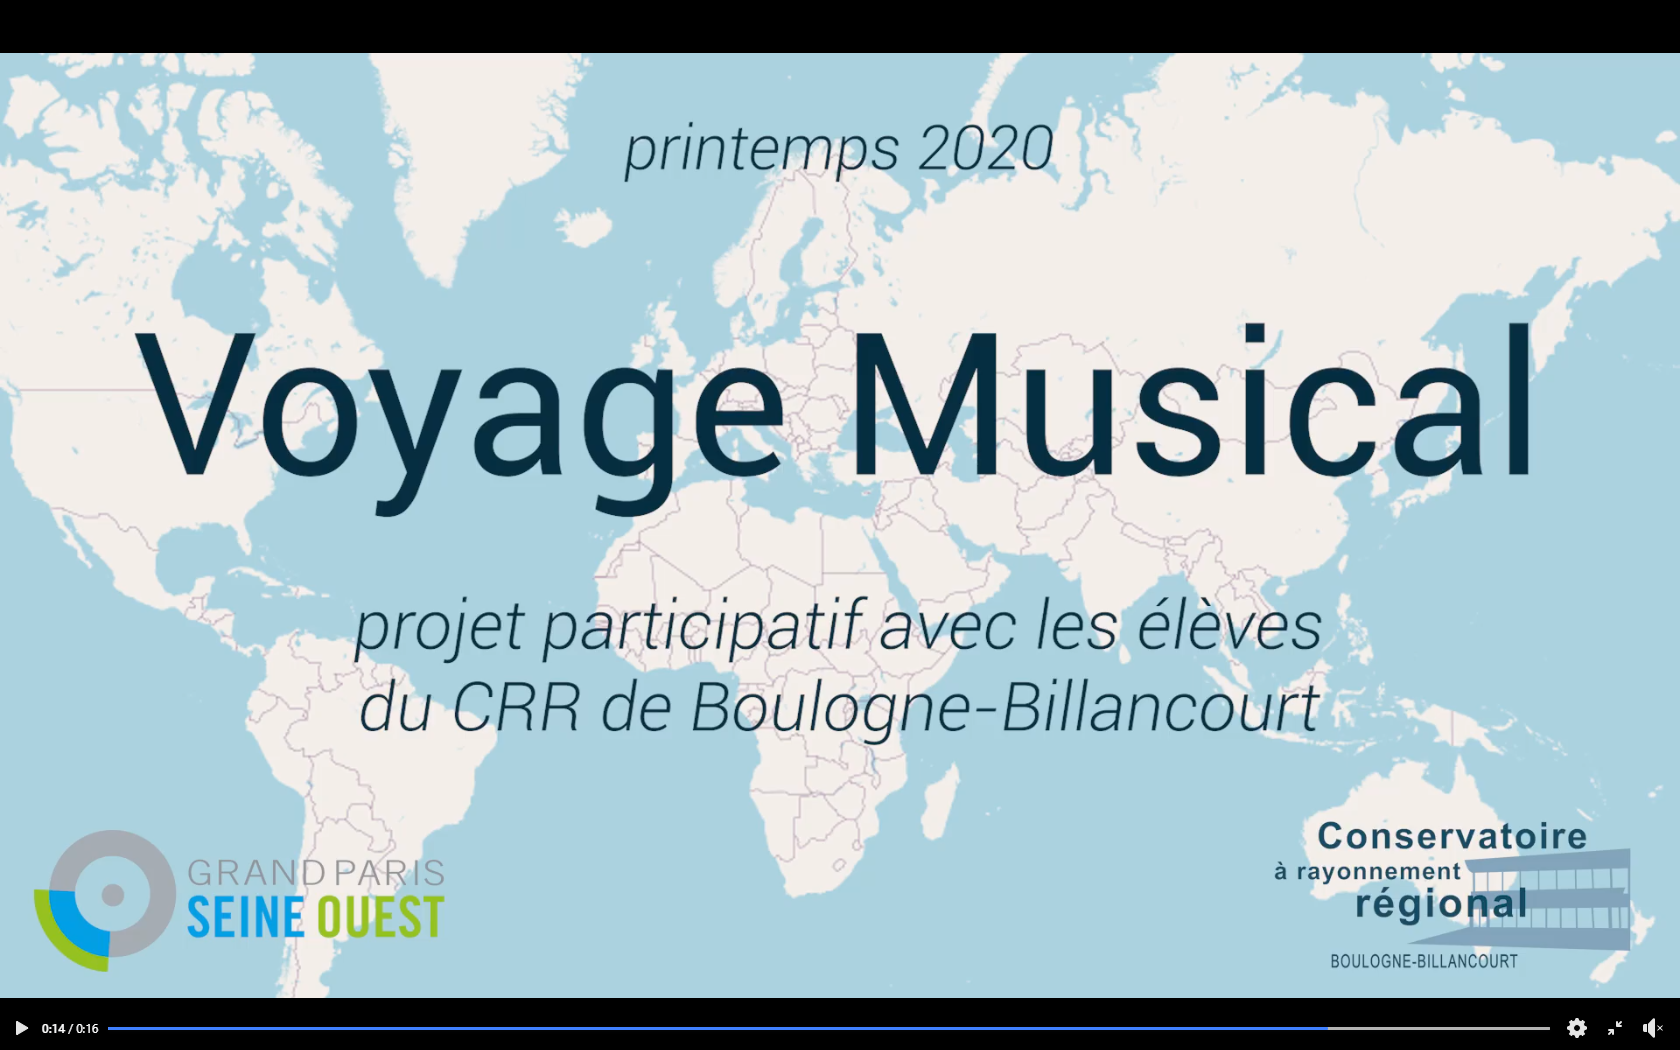 Voyage musical, Conservatoire de Boulogne-Billancourt, fête de la musique 2020